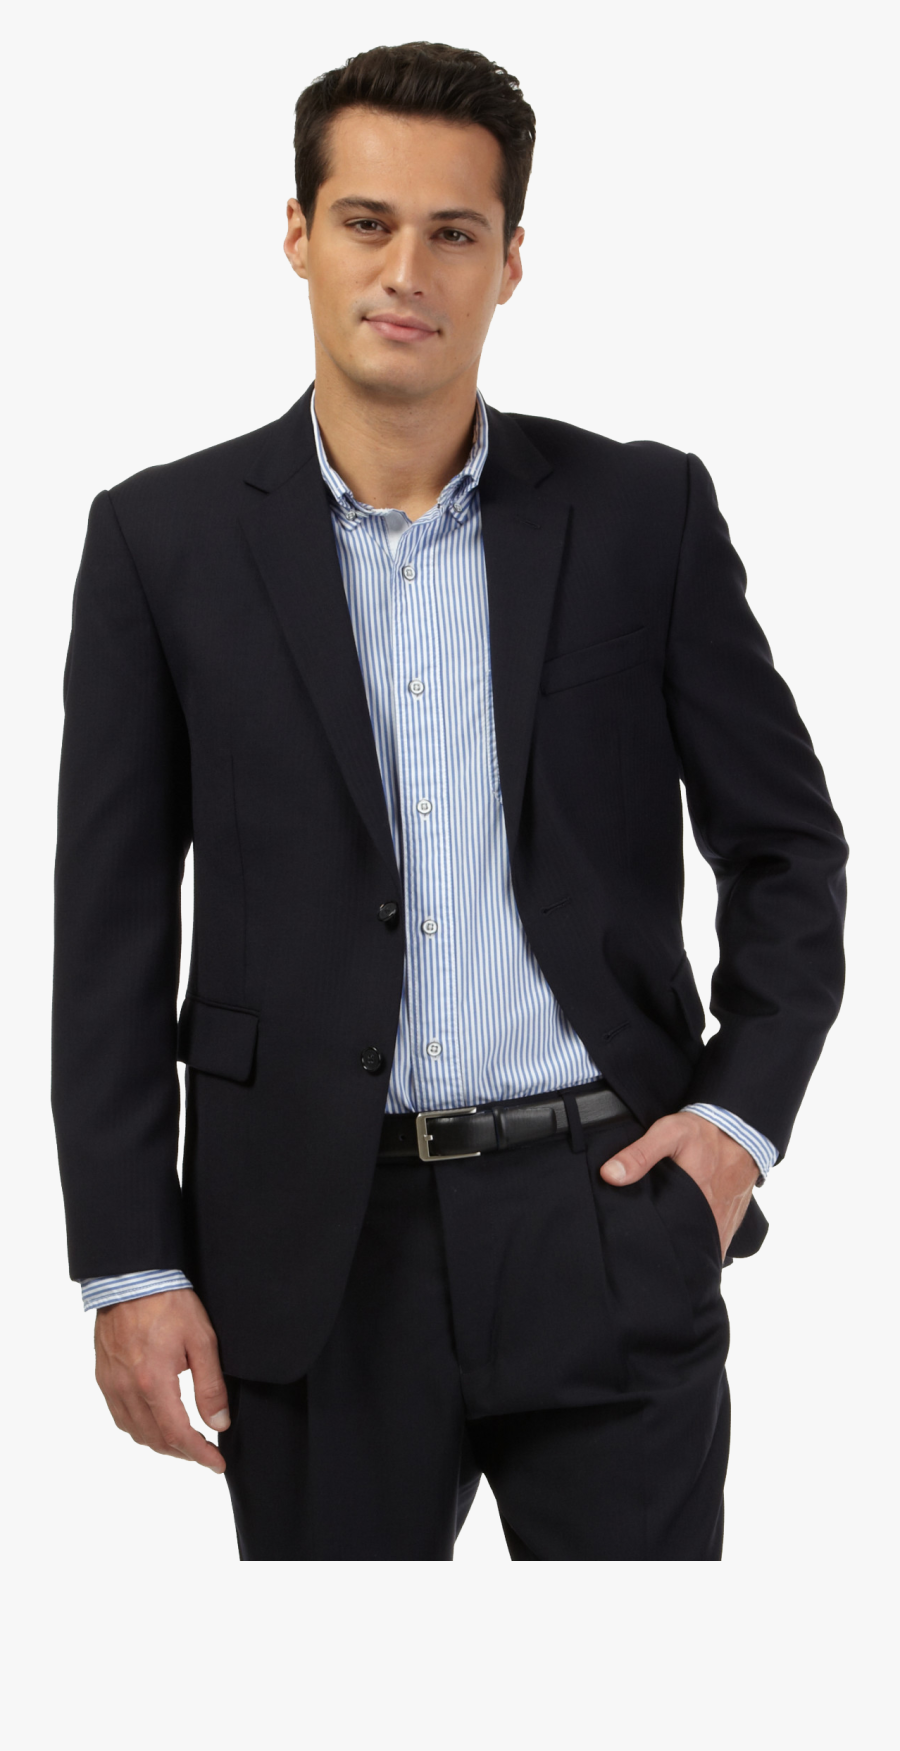 Suit Jacket Herringbone Tuxedo Clothing - Transparent Man In Suit, Transparent Clipart